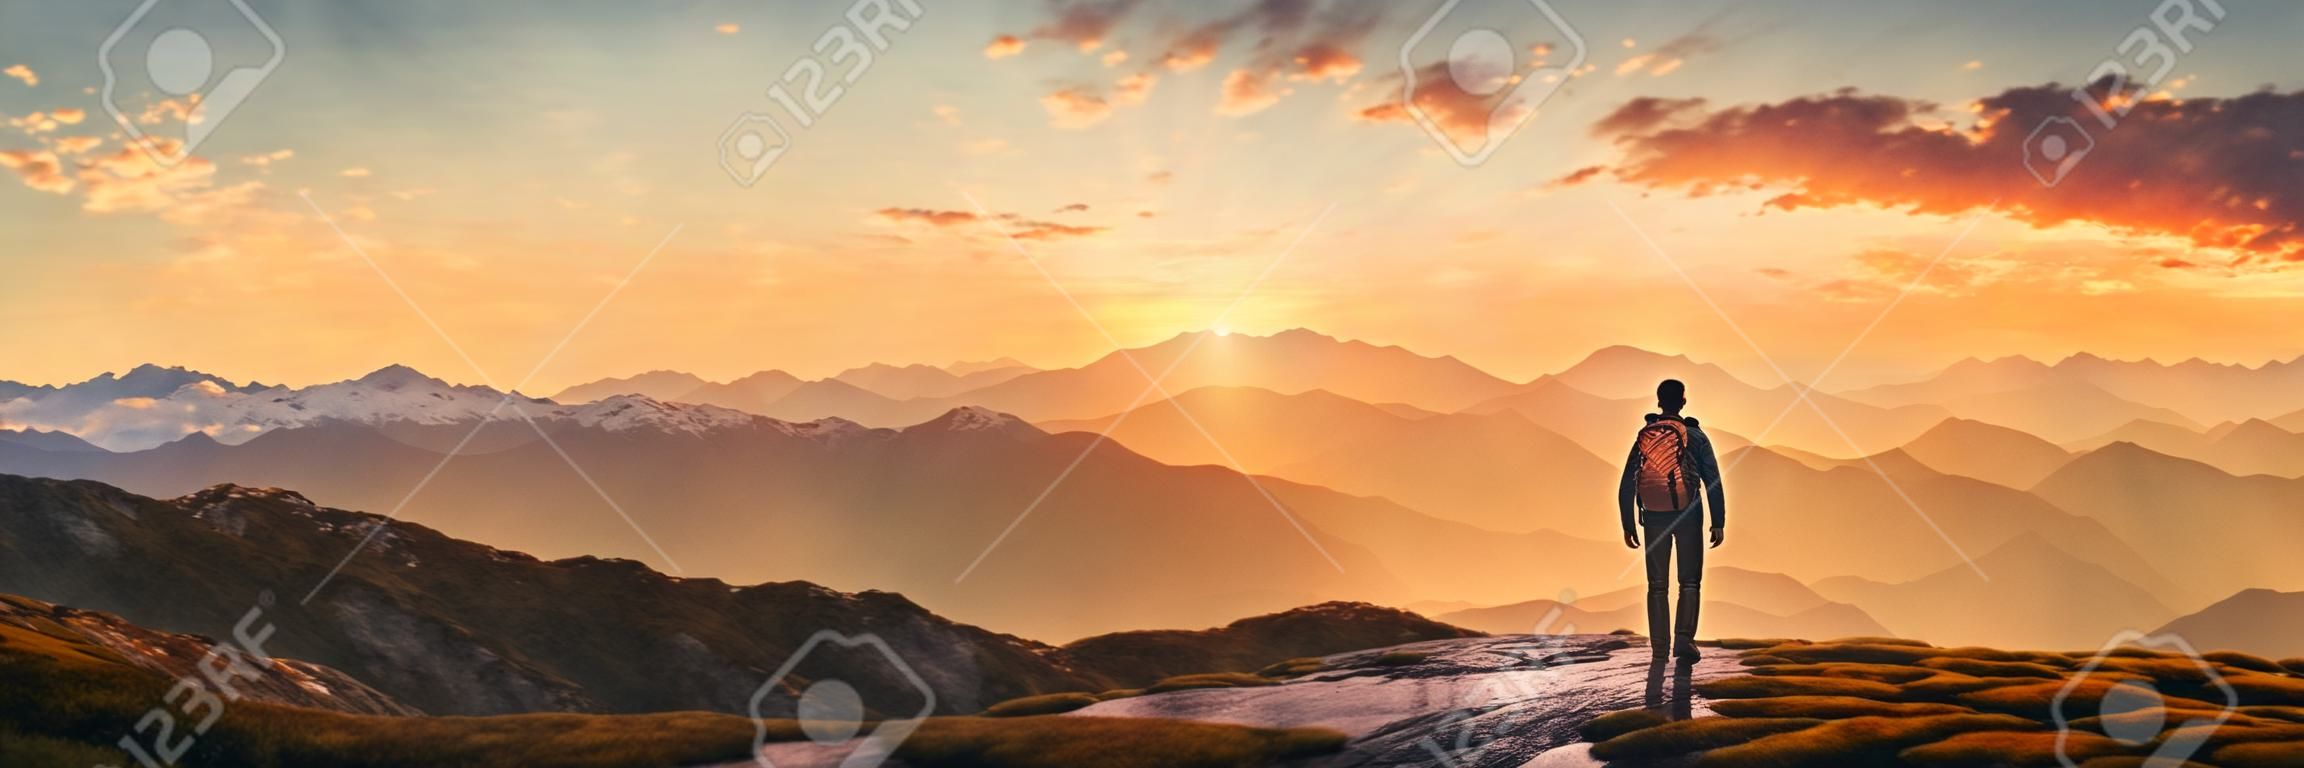 Randonneur dans les montagnes au coucher du soleil vue panoramique